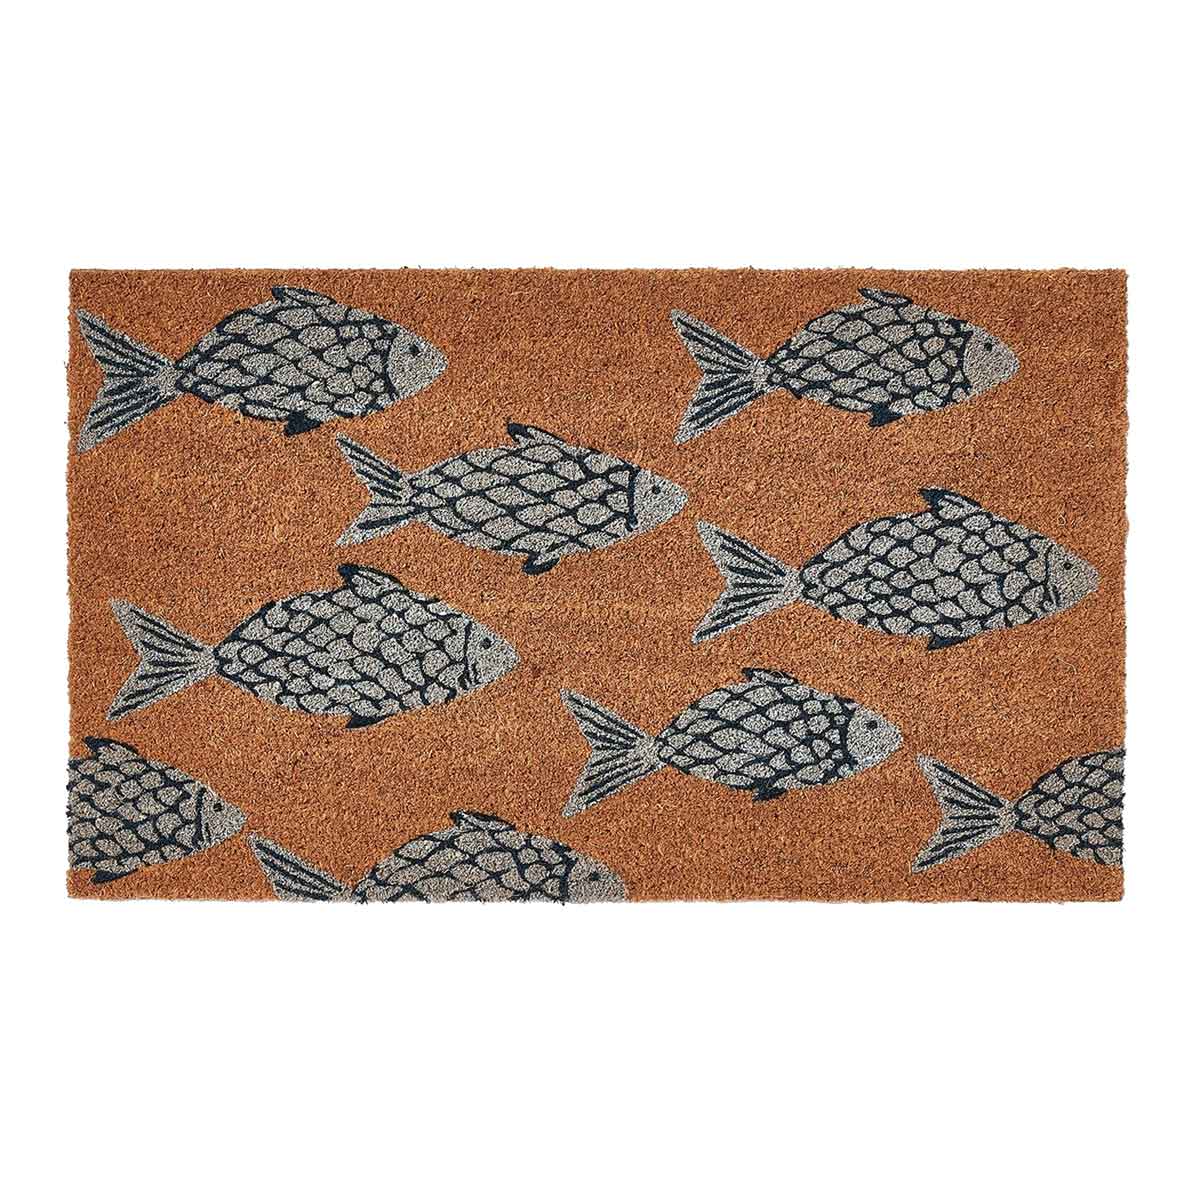 PVC Backed Coir Doormat - School of Fish